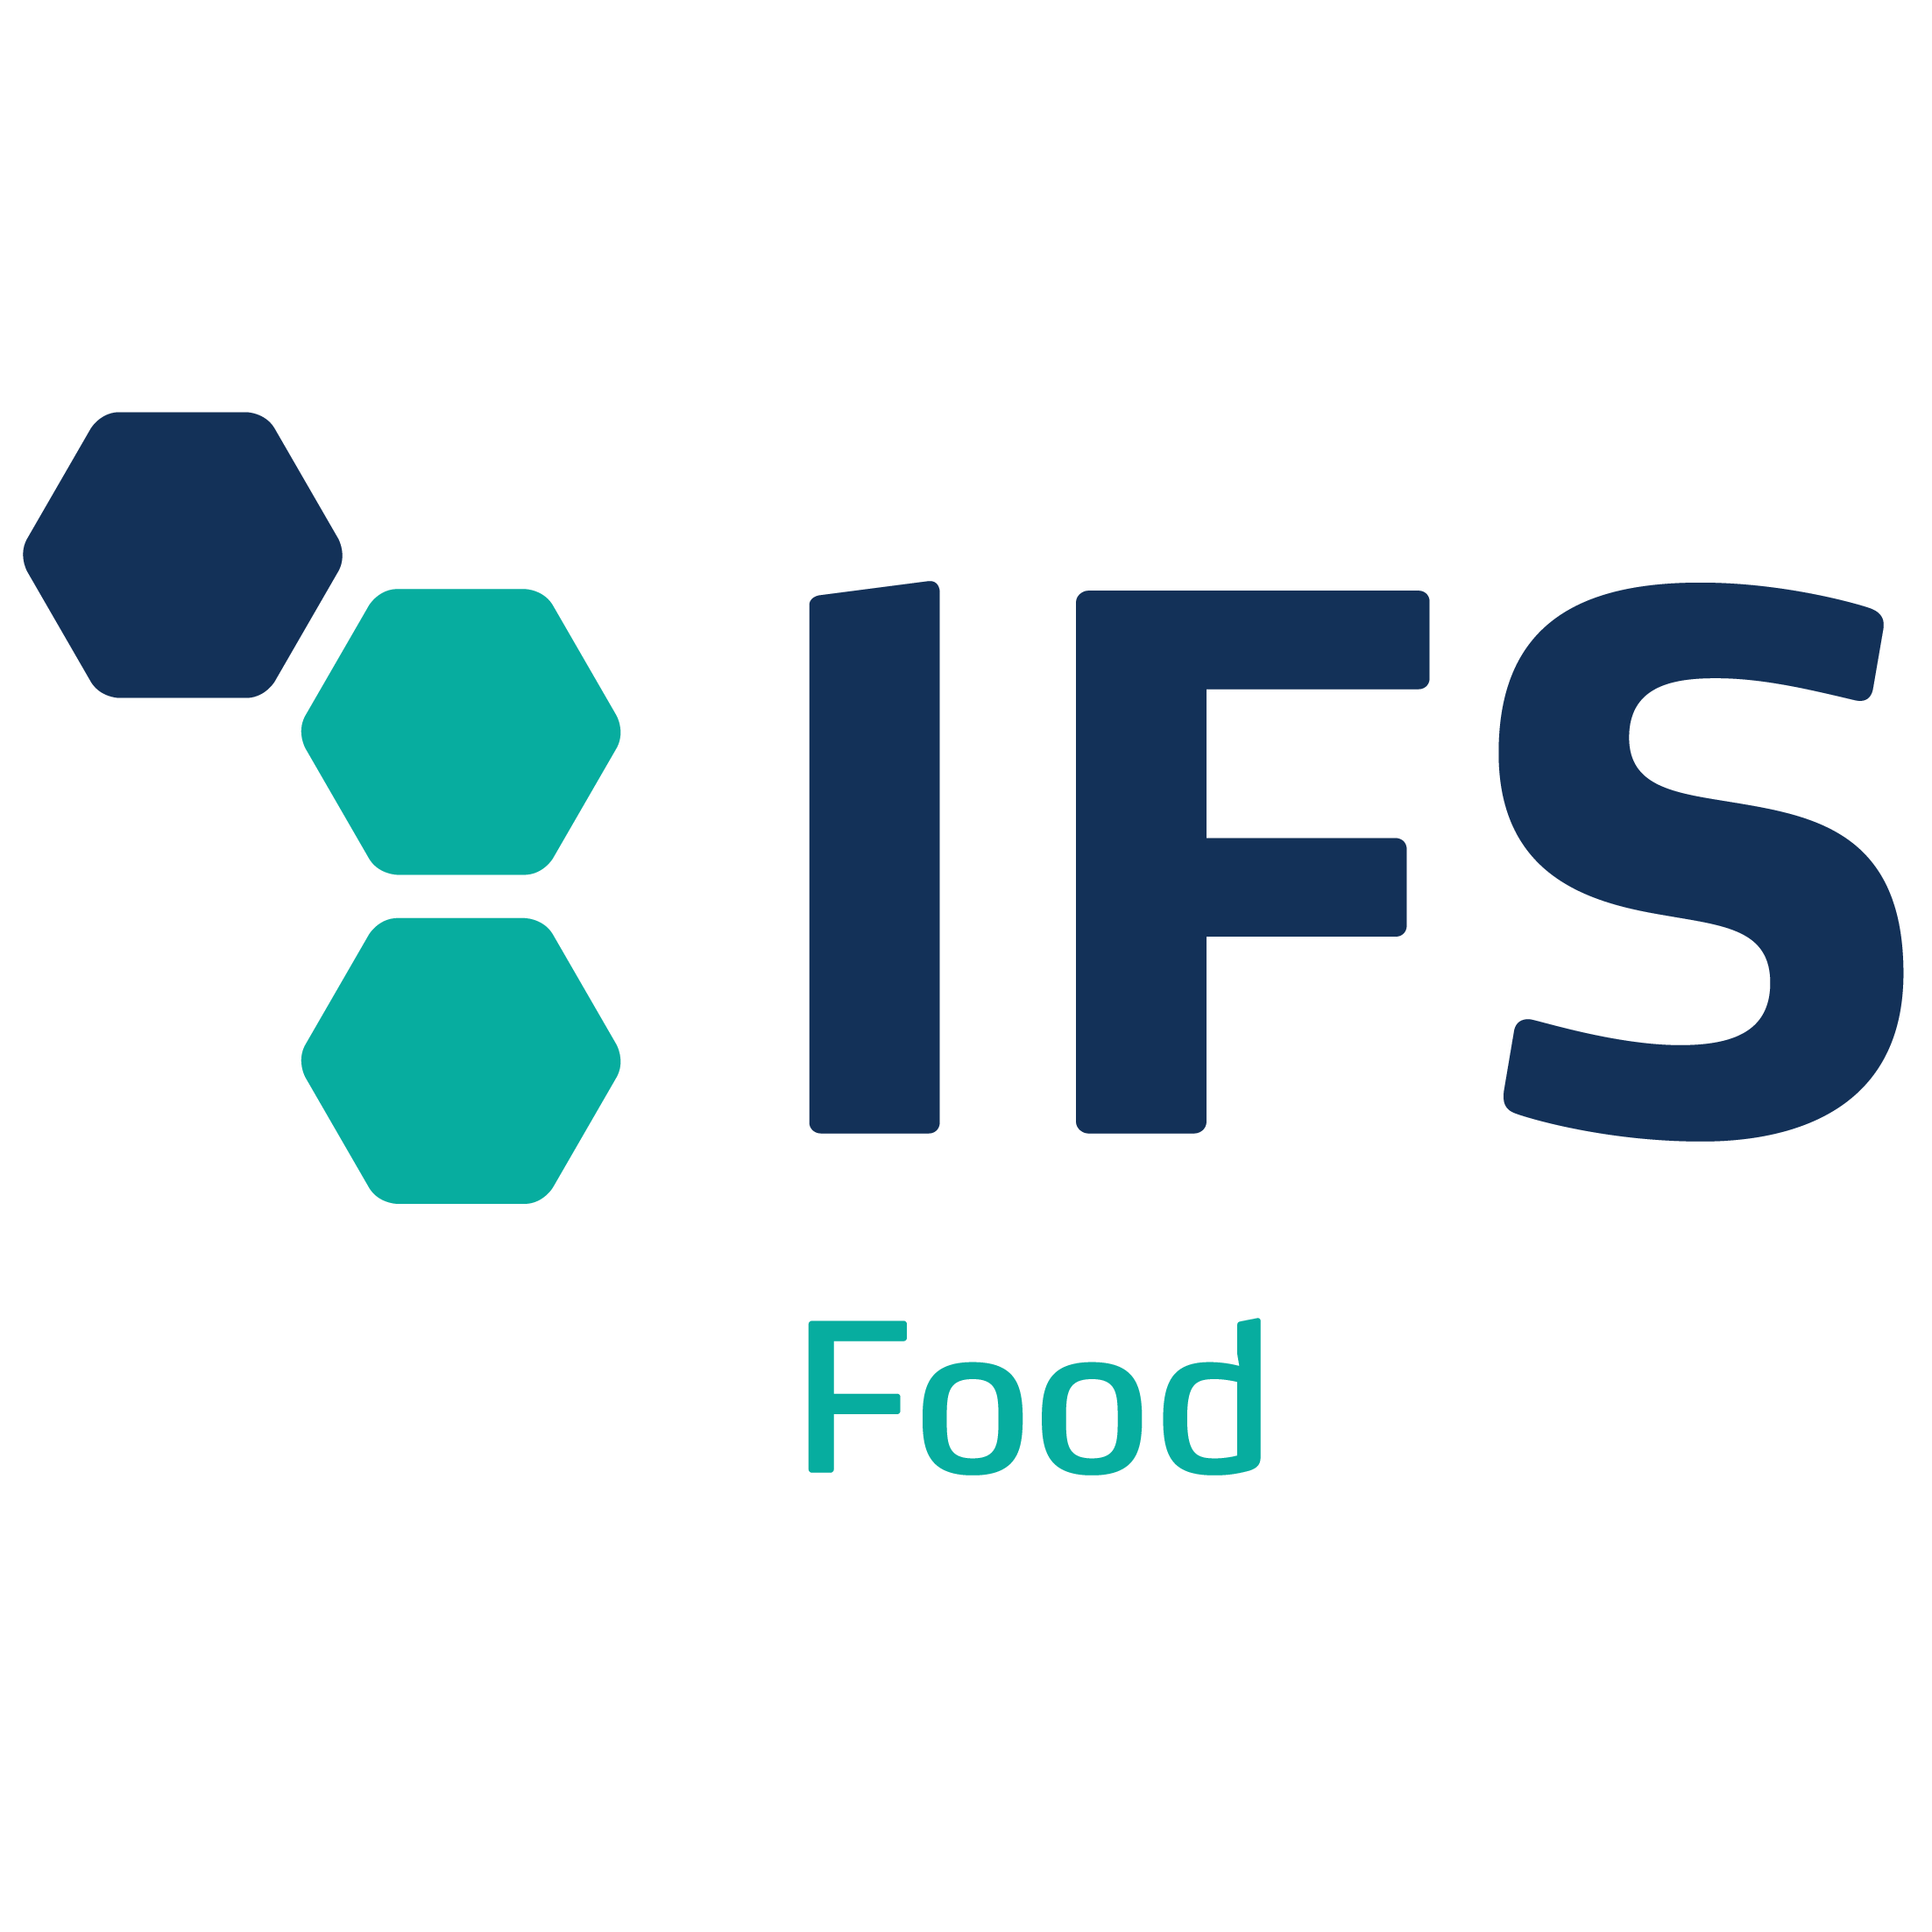  International Featured Standard (IFS) Logo